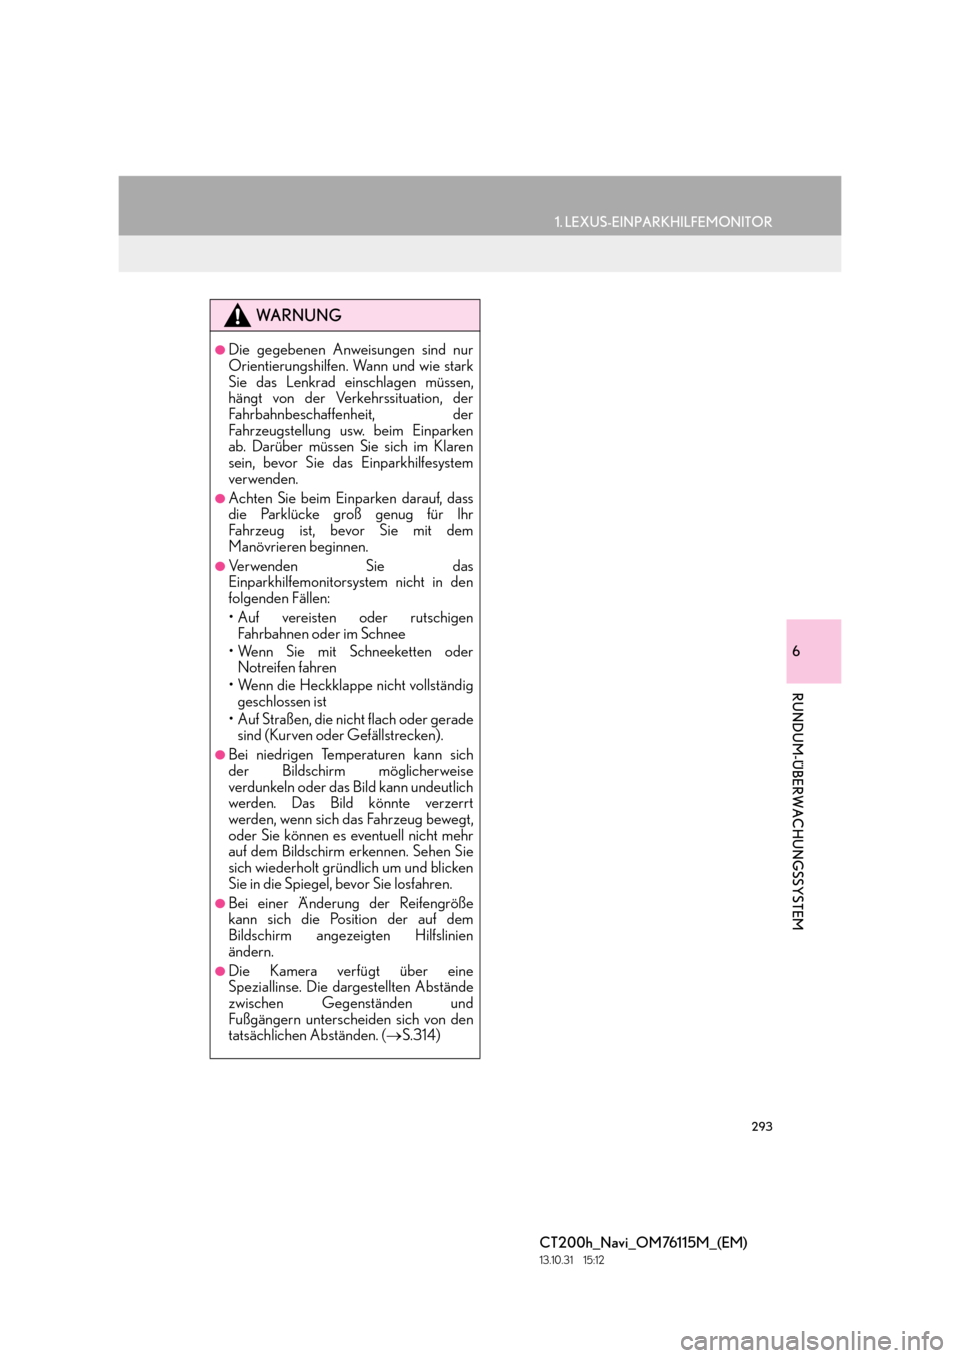 Lexus CT200h 2014  Navigation Handbuch (in German) 293
1. LEXUS-EINPARKHILFEMONITOR
6
RUNDUM-ÜBERWACHUNGSSYSTEM
CT200h_Navi_OM76115M_(EM)
13.10.31     15:12
WA R N U N G
●Die gegebenen Anweisungen sind nur
Orientierungshilfen. Wann und wie stark
Si